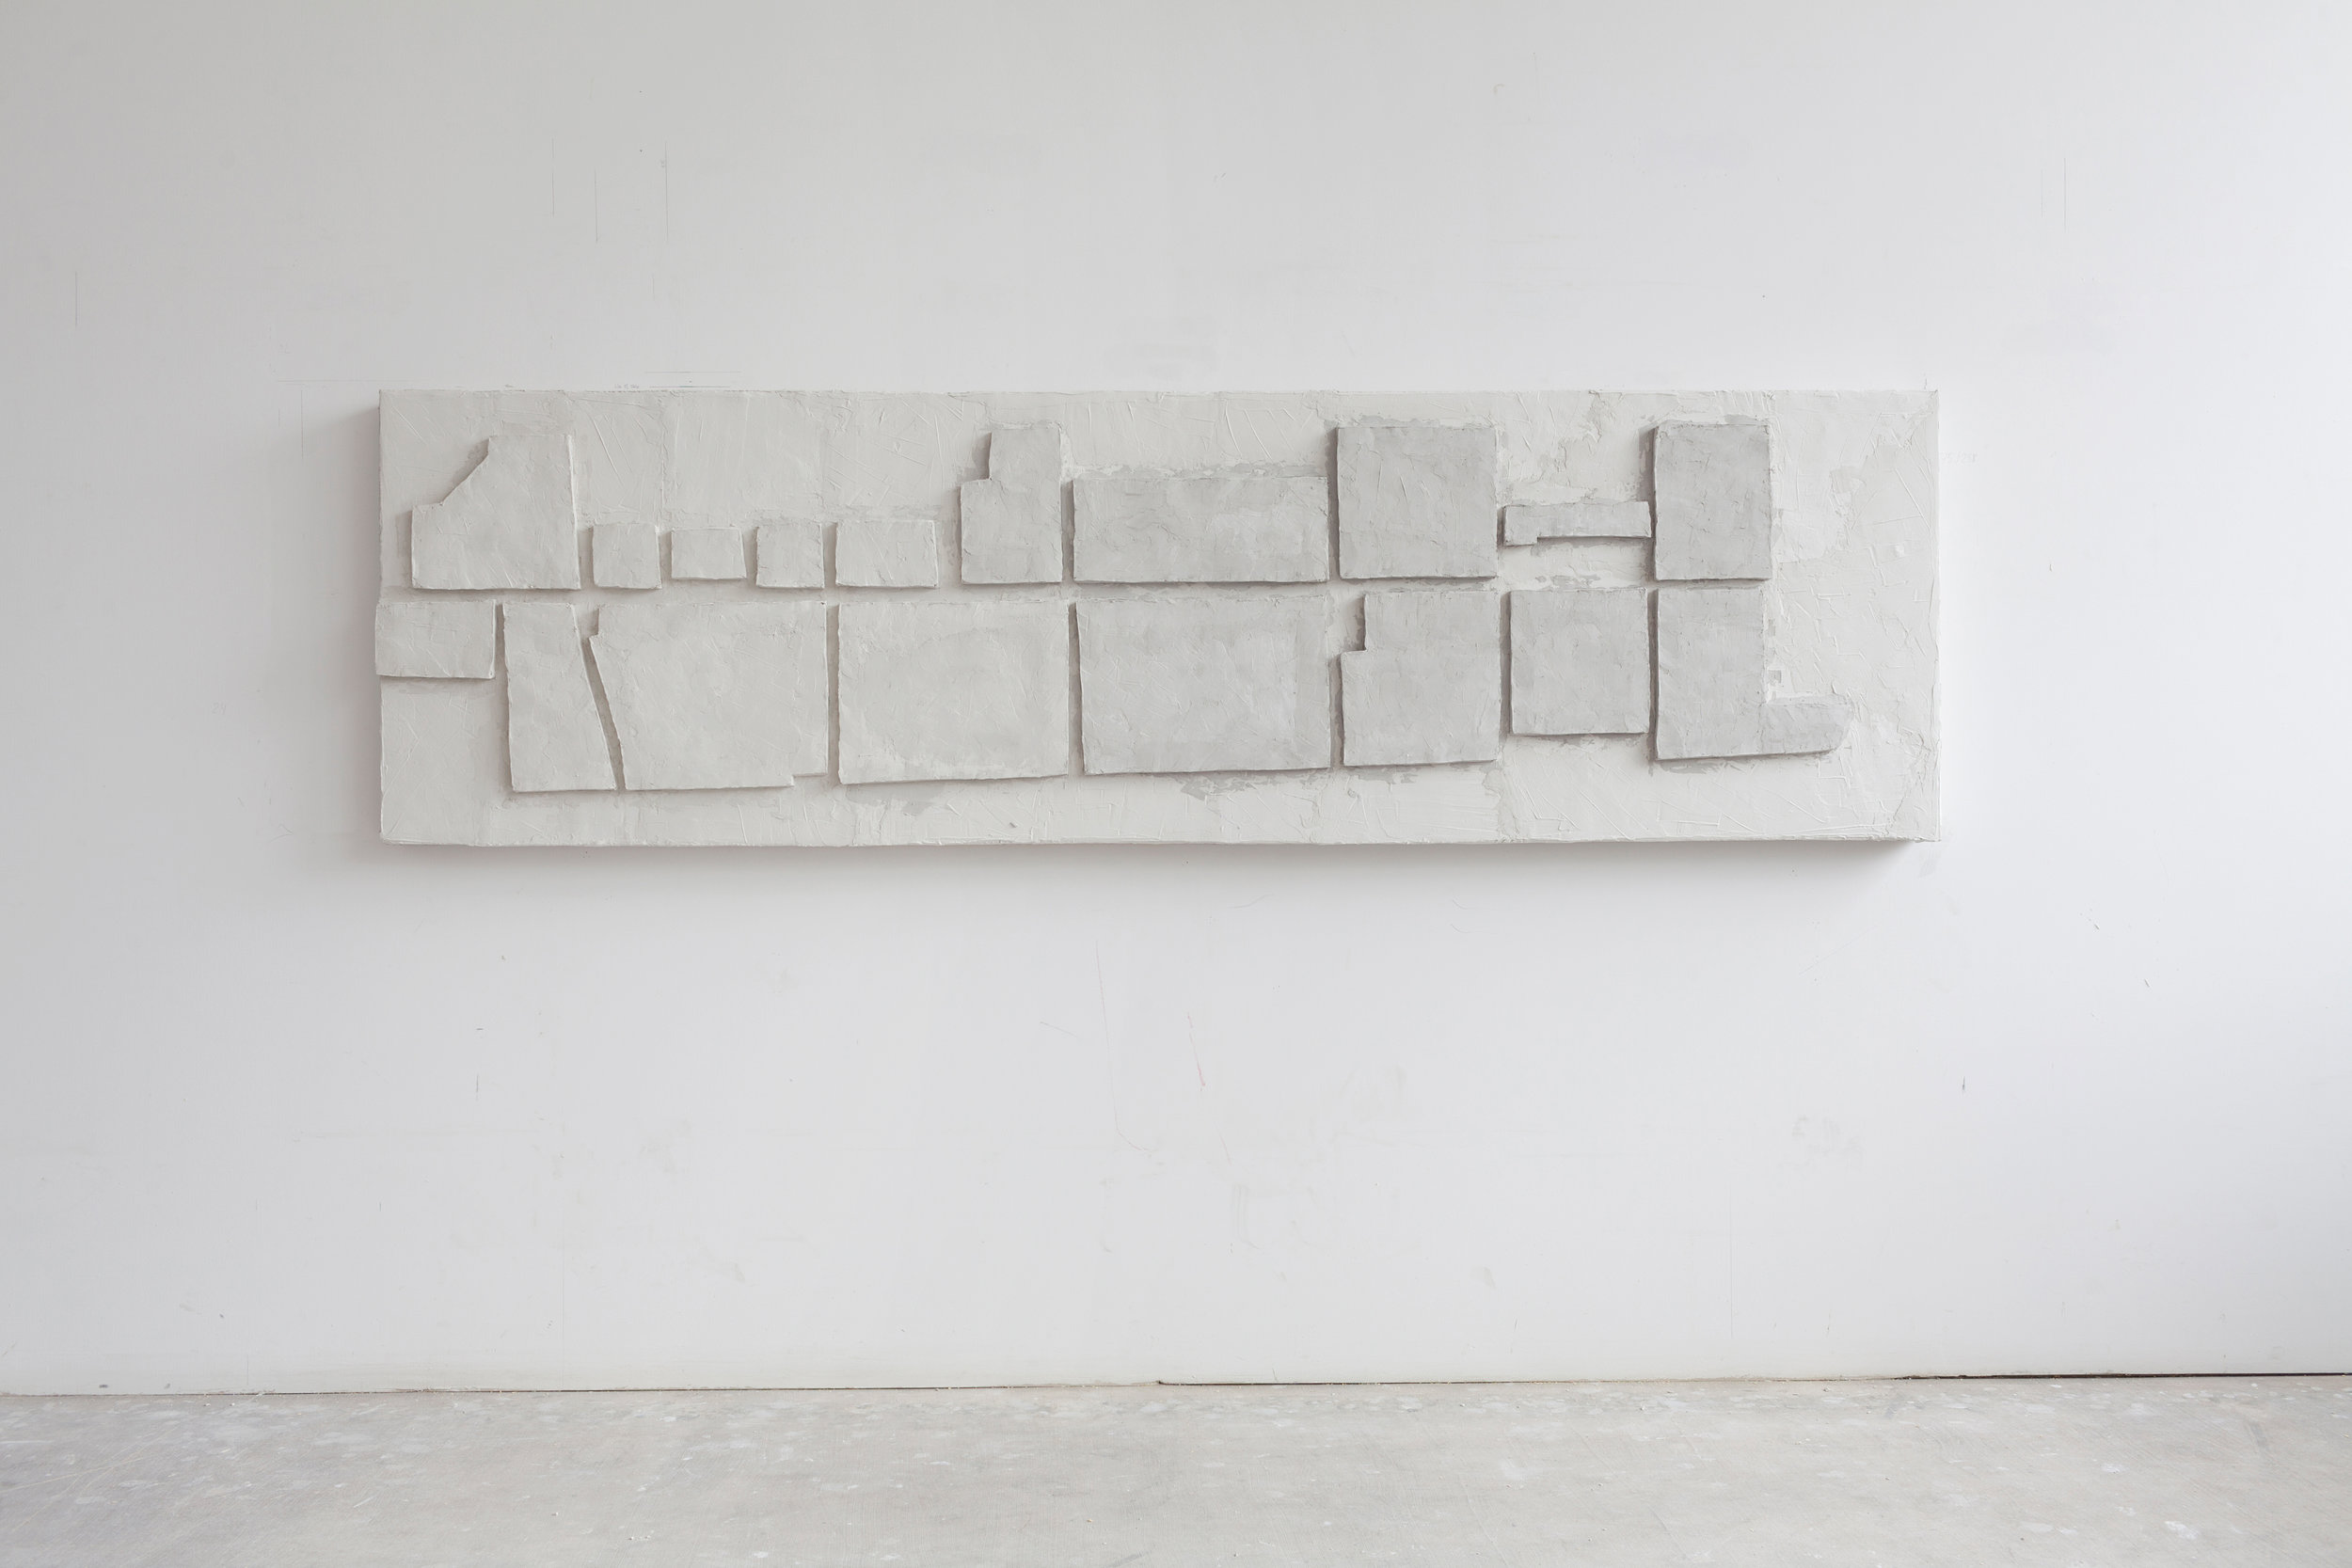   ‘Via G. L. Lagrange - Turin’  Baugips auf Polystyrol-Hartschaum 259 x 75 x 11 cm 2017 